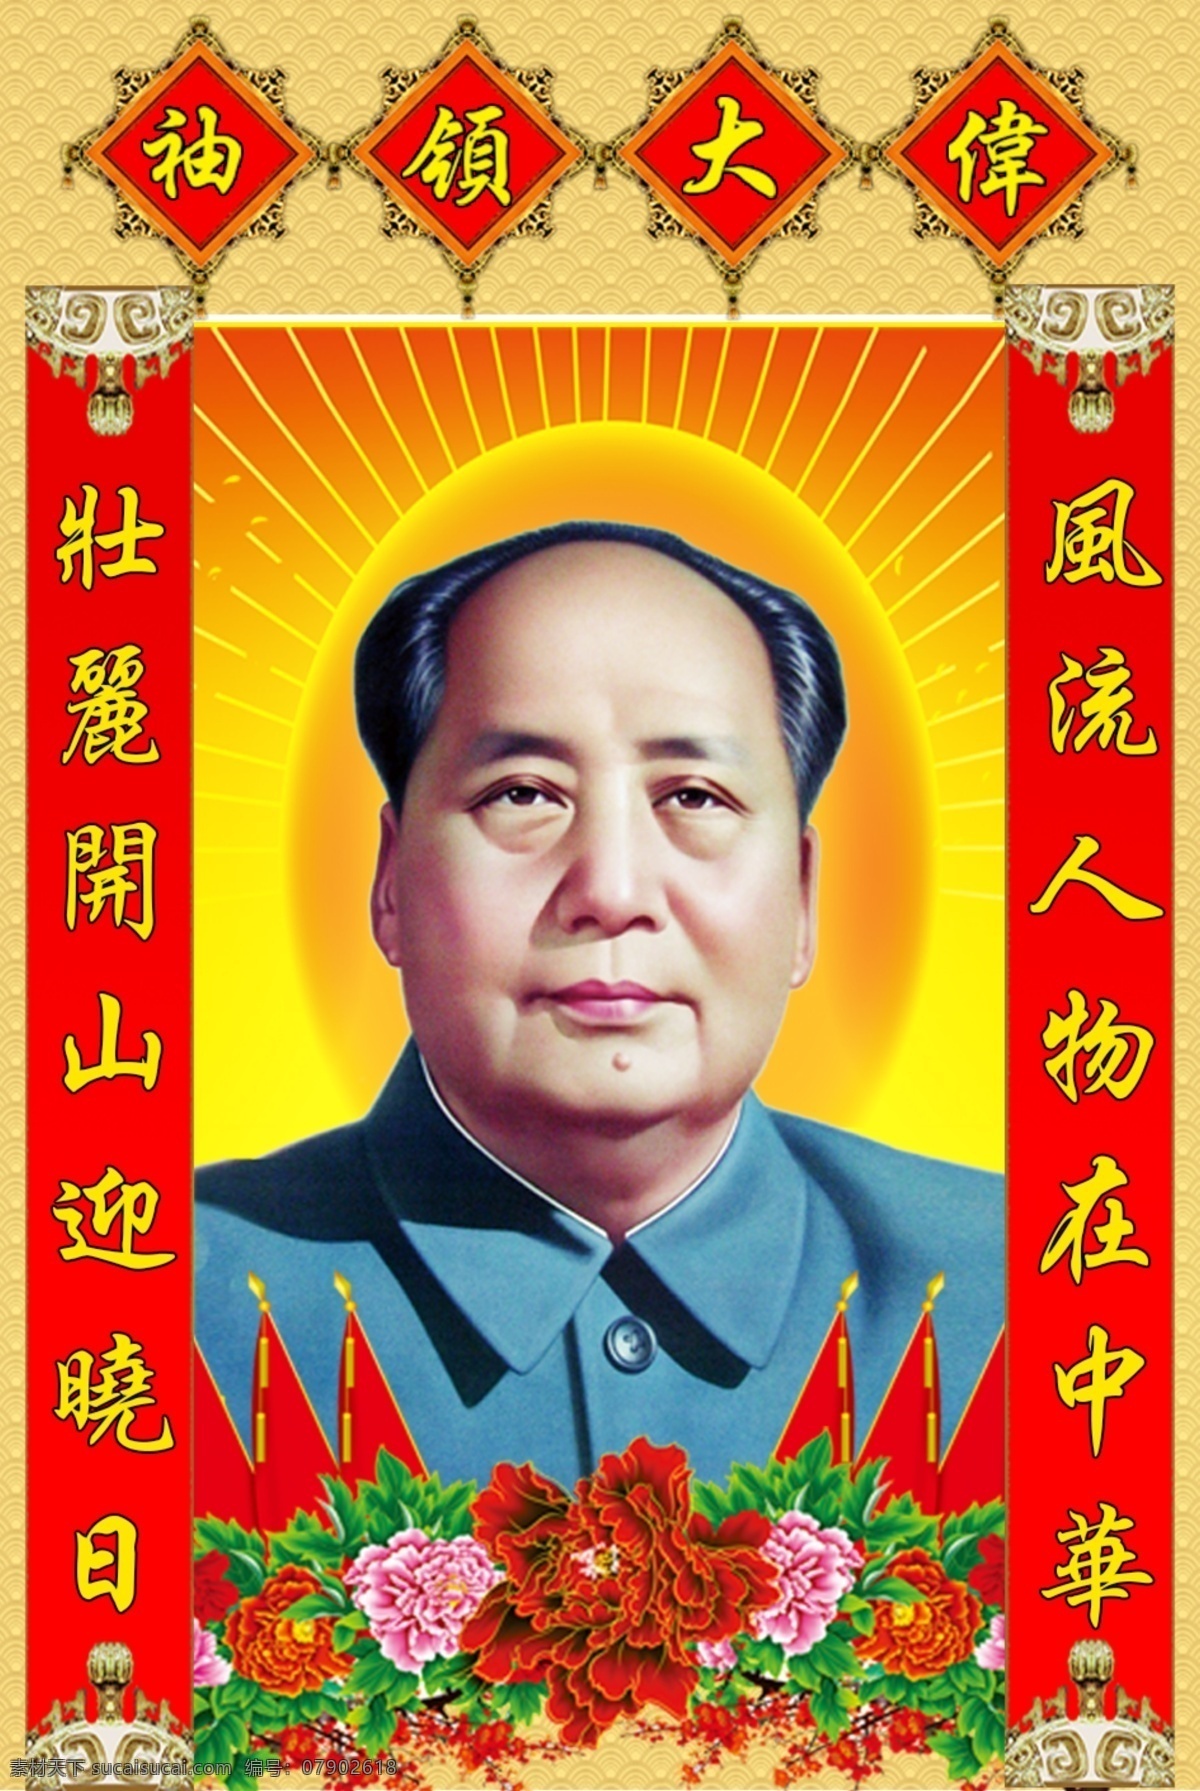 毛主席 伟人像 毛主席像 毛泽东像 东方红